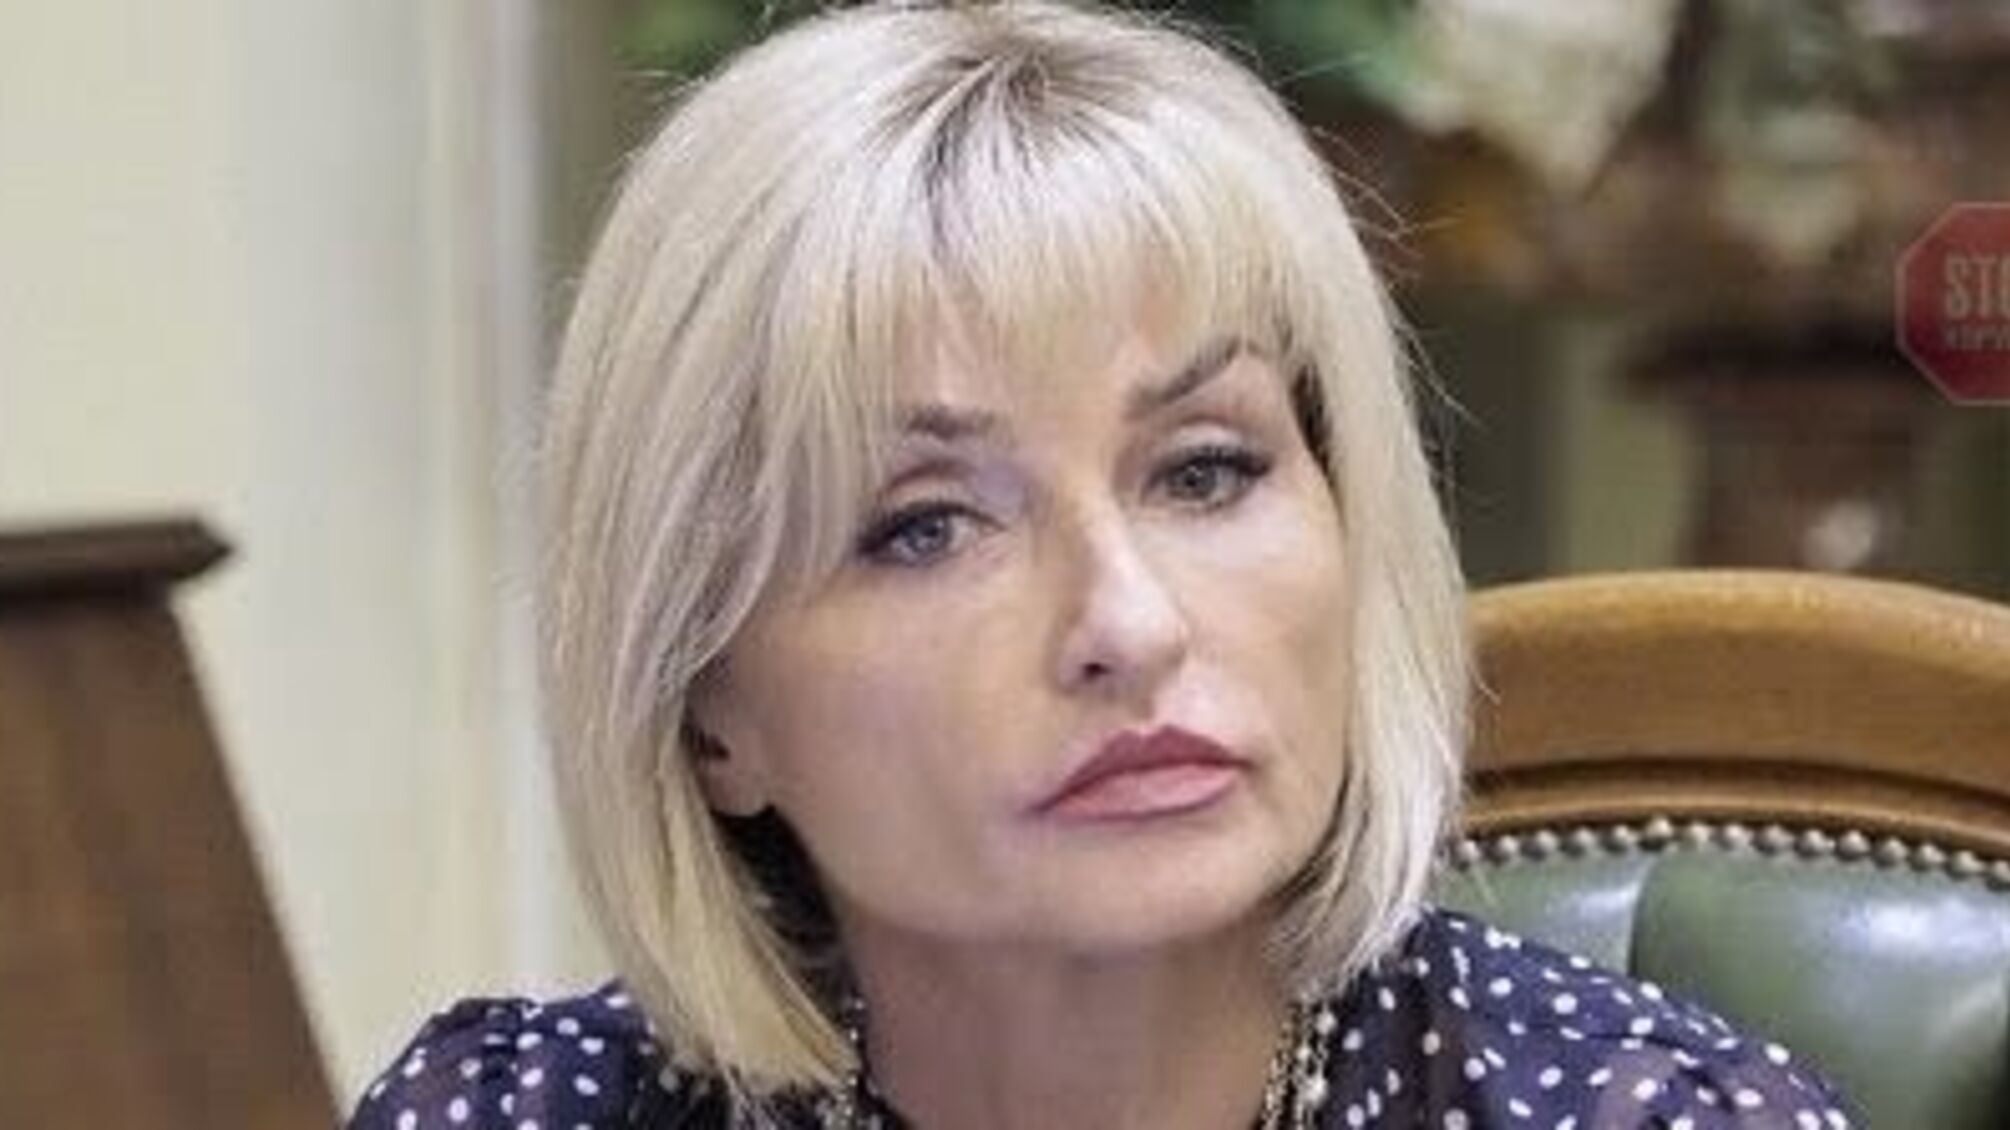 Ірина Луценко покине парламент: стало відомо хто буде замість неї